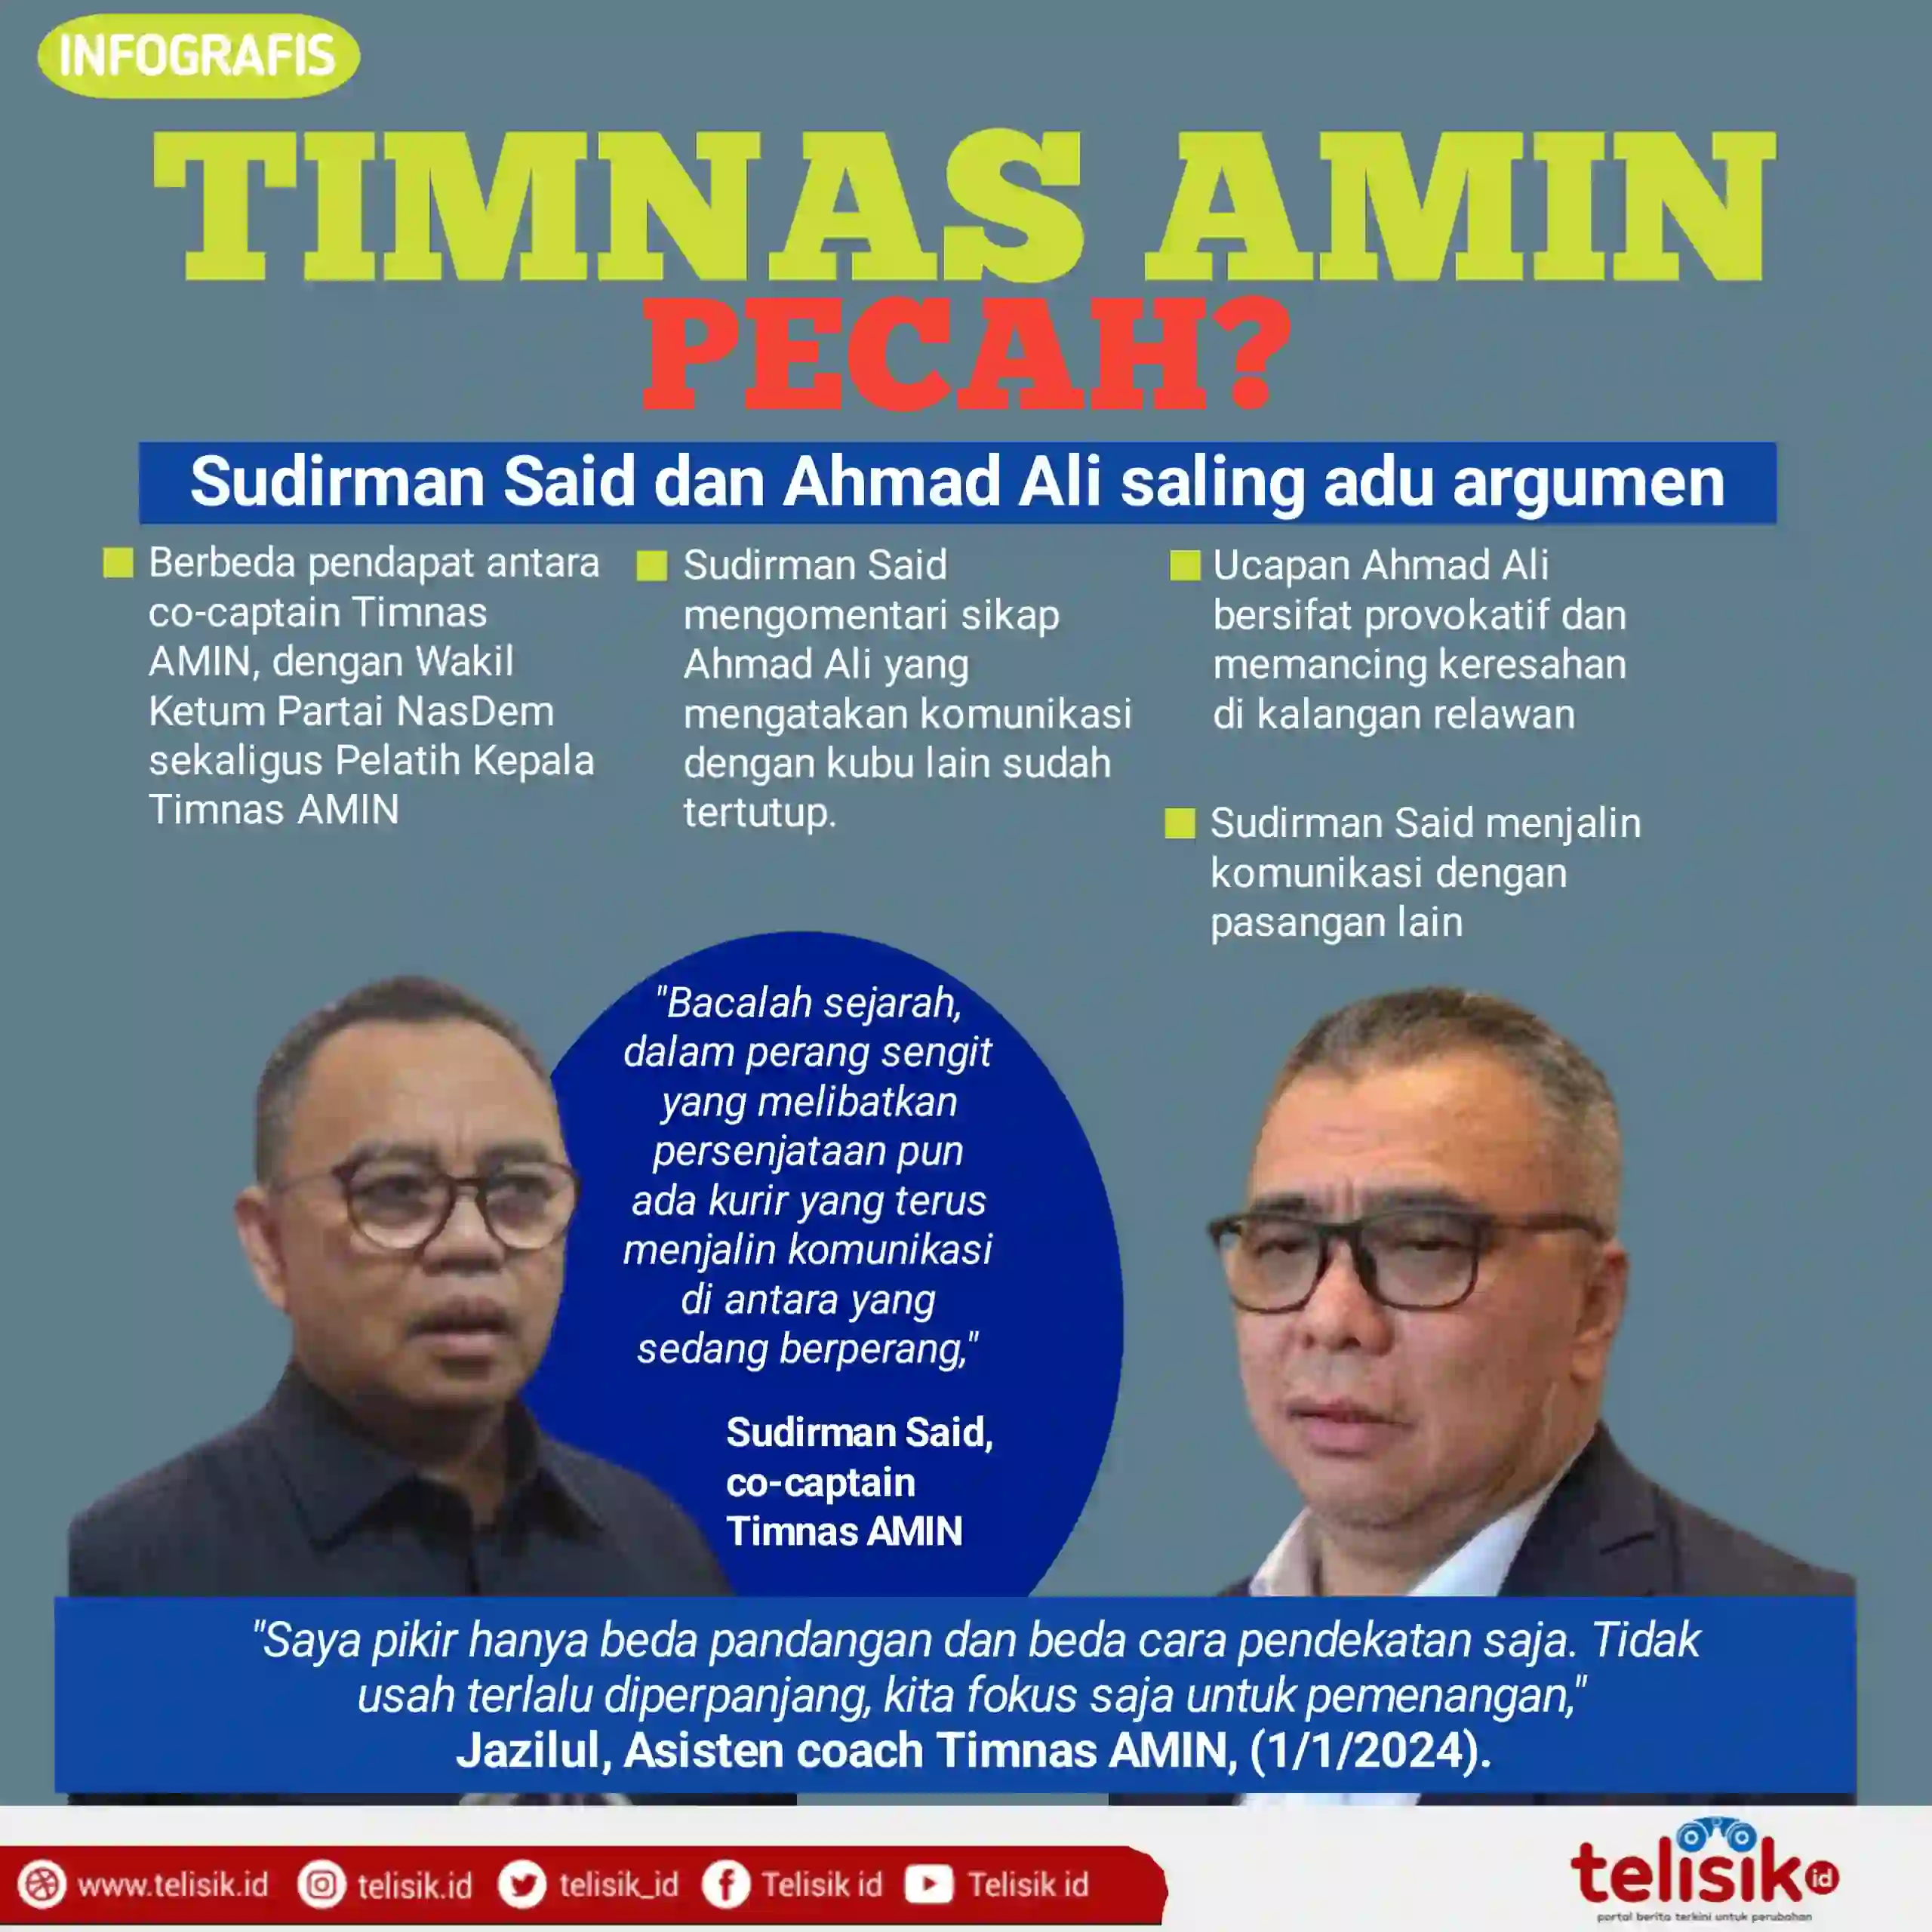 Infografis: Timnas AMIN Pecah?